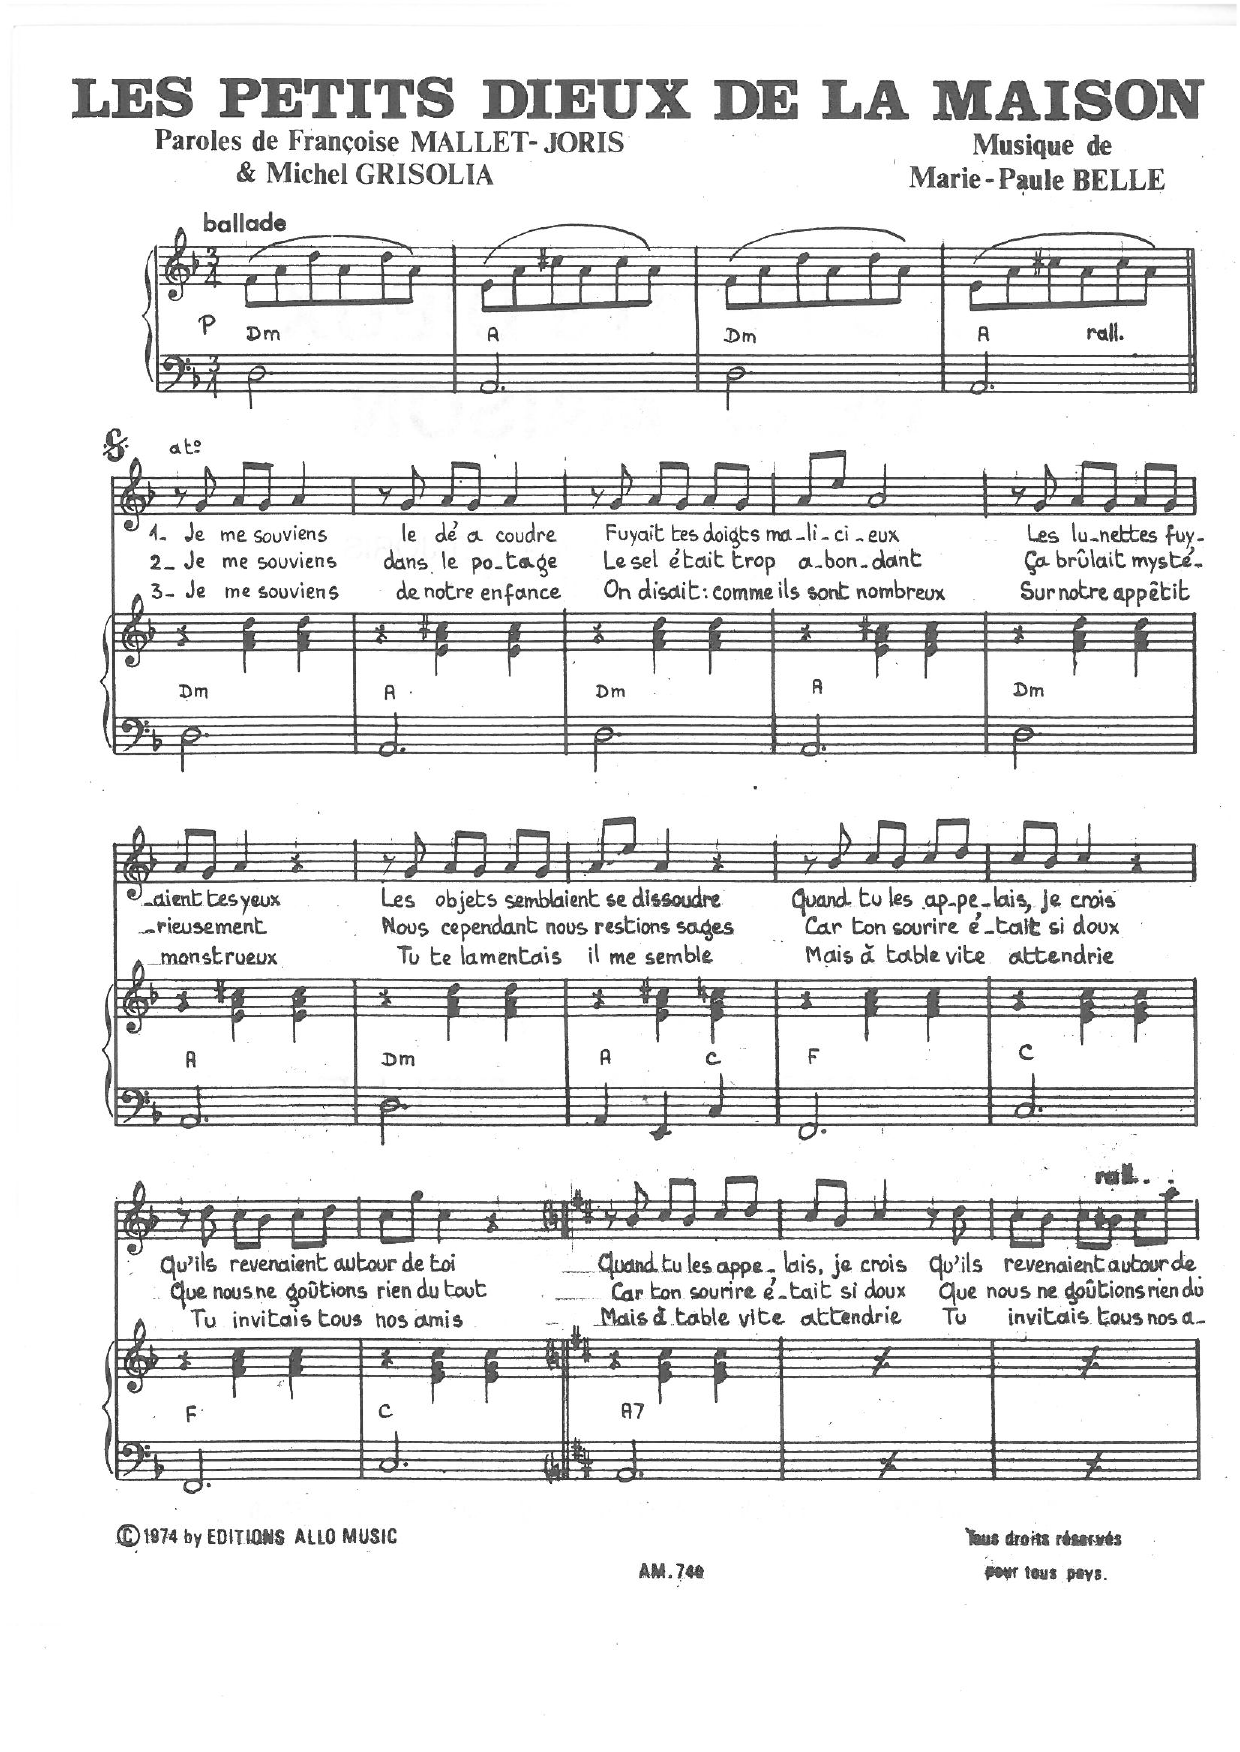 Michel Grisolia, Françoise Mallet-Joris, Marie Paule Belle Les Petits Dieux De La Maison Sheet Music Notes & Chords for Piano & Vocal - Download or Print PDF